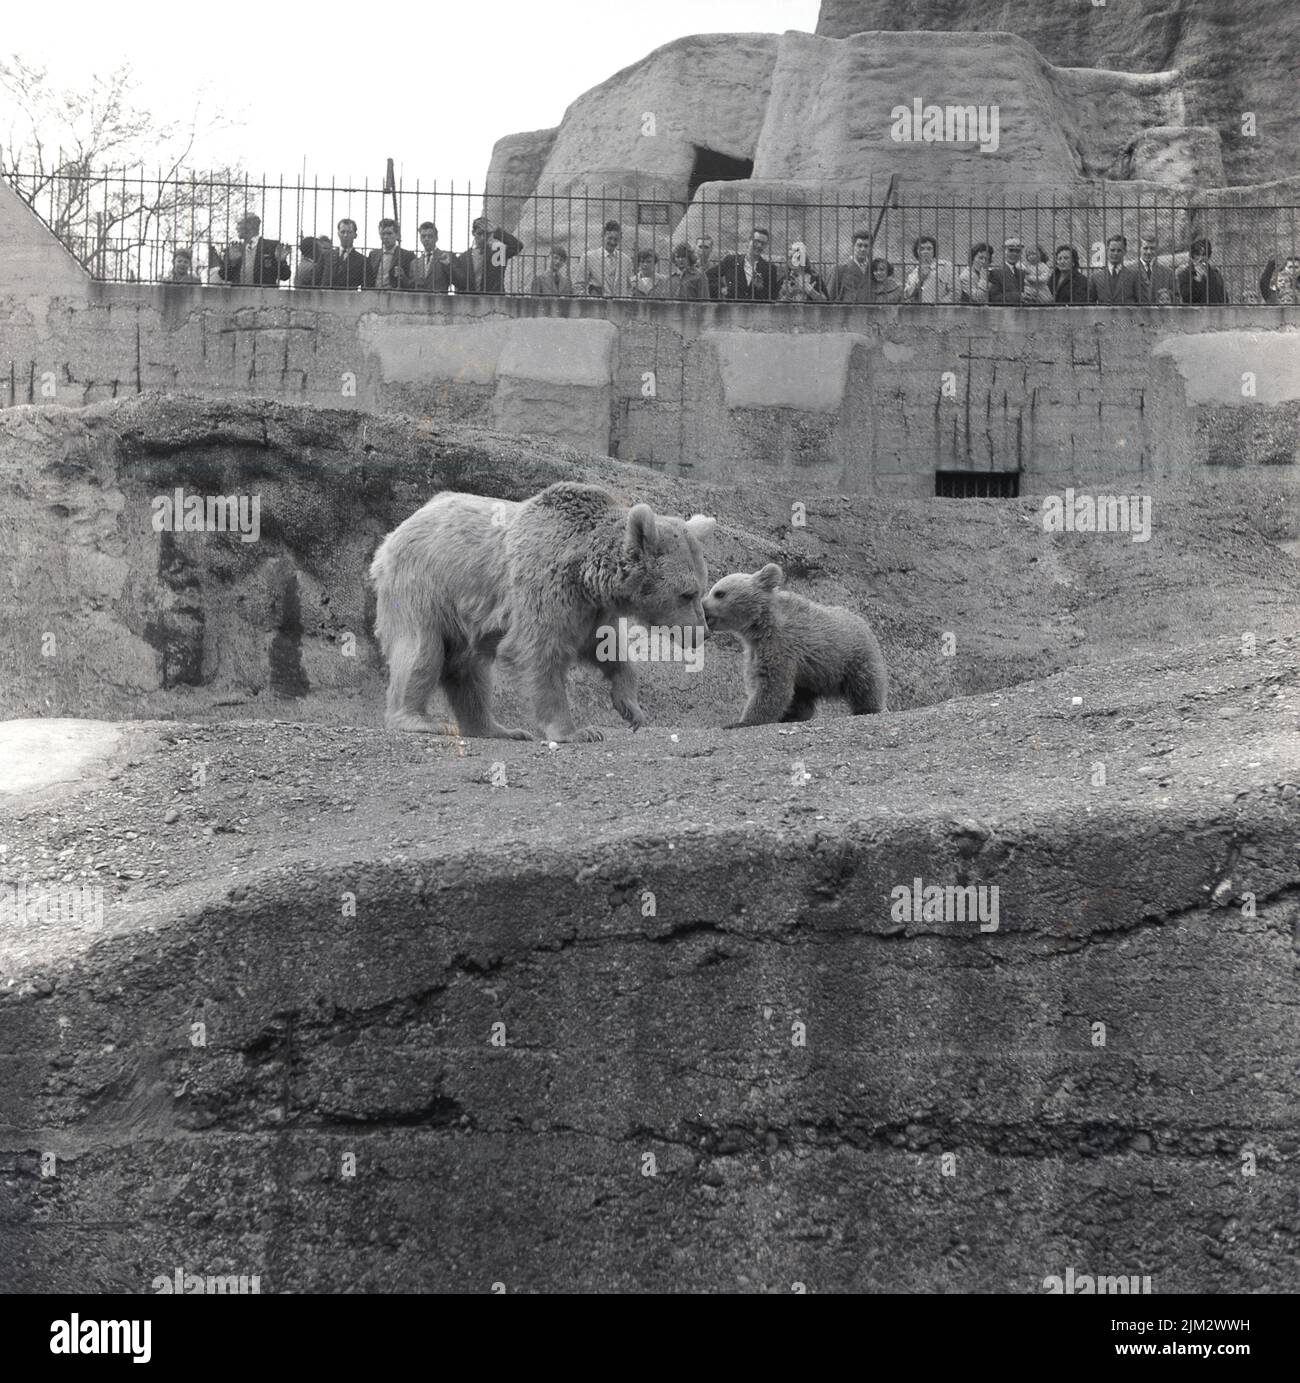 1960s, historique, sur les terrasses de Mappin au zoo de Londres, un ours polaire avec cub, avec les visiteurs regardant vers le bas. Le manteau de la mère ours a été coupé à mi-chemin sur son corps. Les terrasses ont été construites entre 1913-1914 en béton armé et ces montagnes imitation robuste, conçues pour créer un environnement plus naturel pour les animaux captifs, ont été innovantes pour l'époque. Banque D'Images